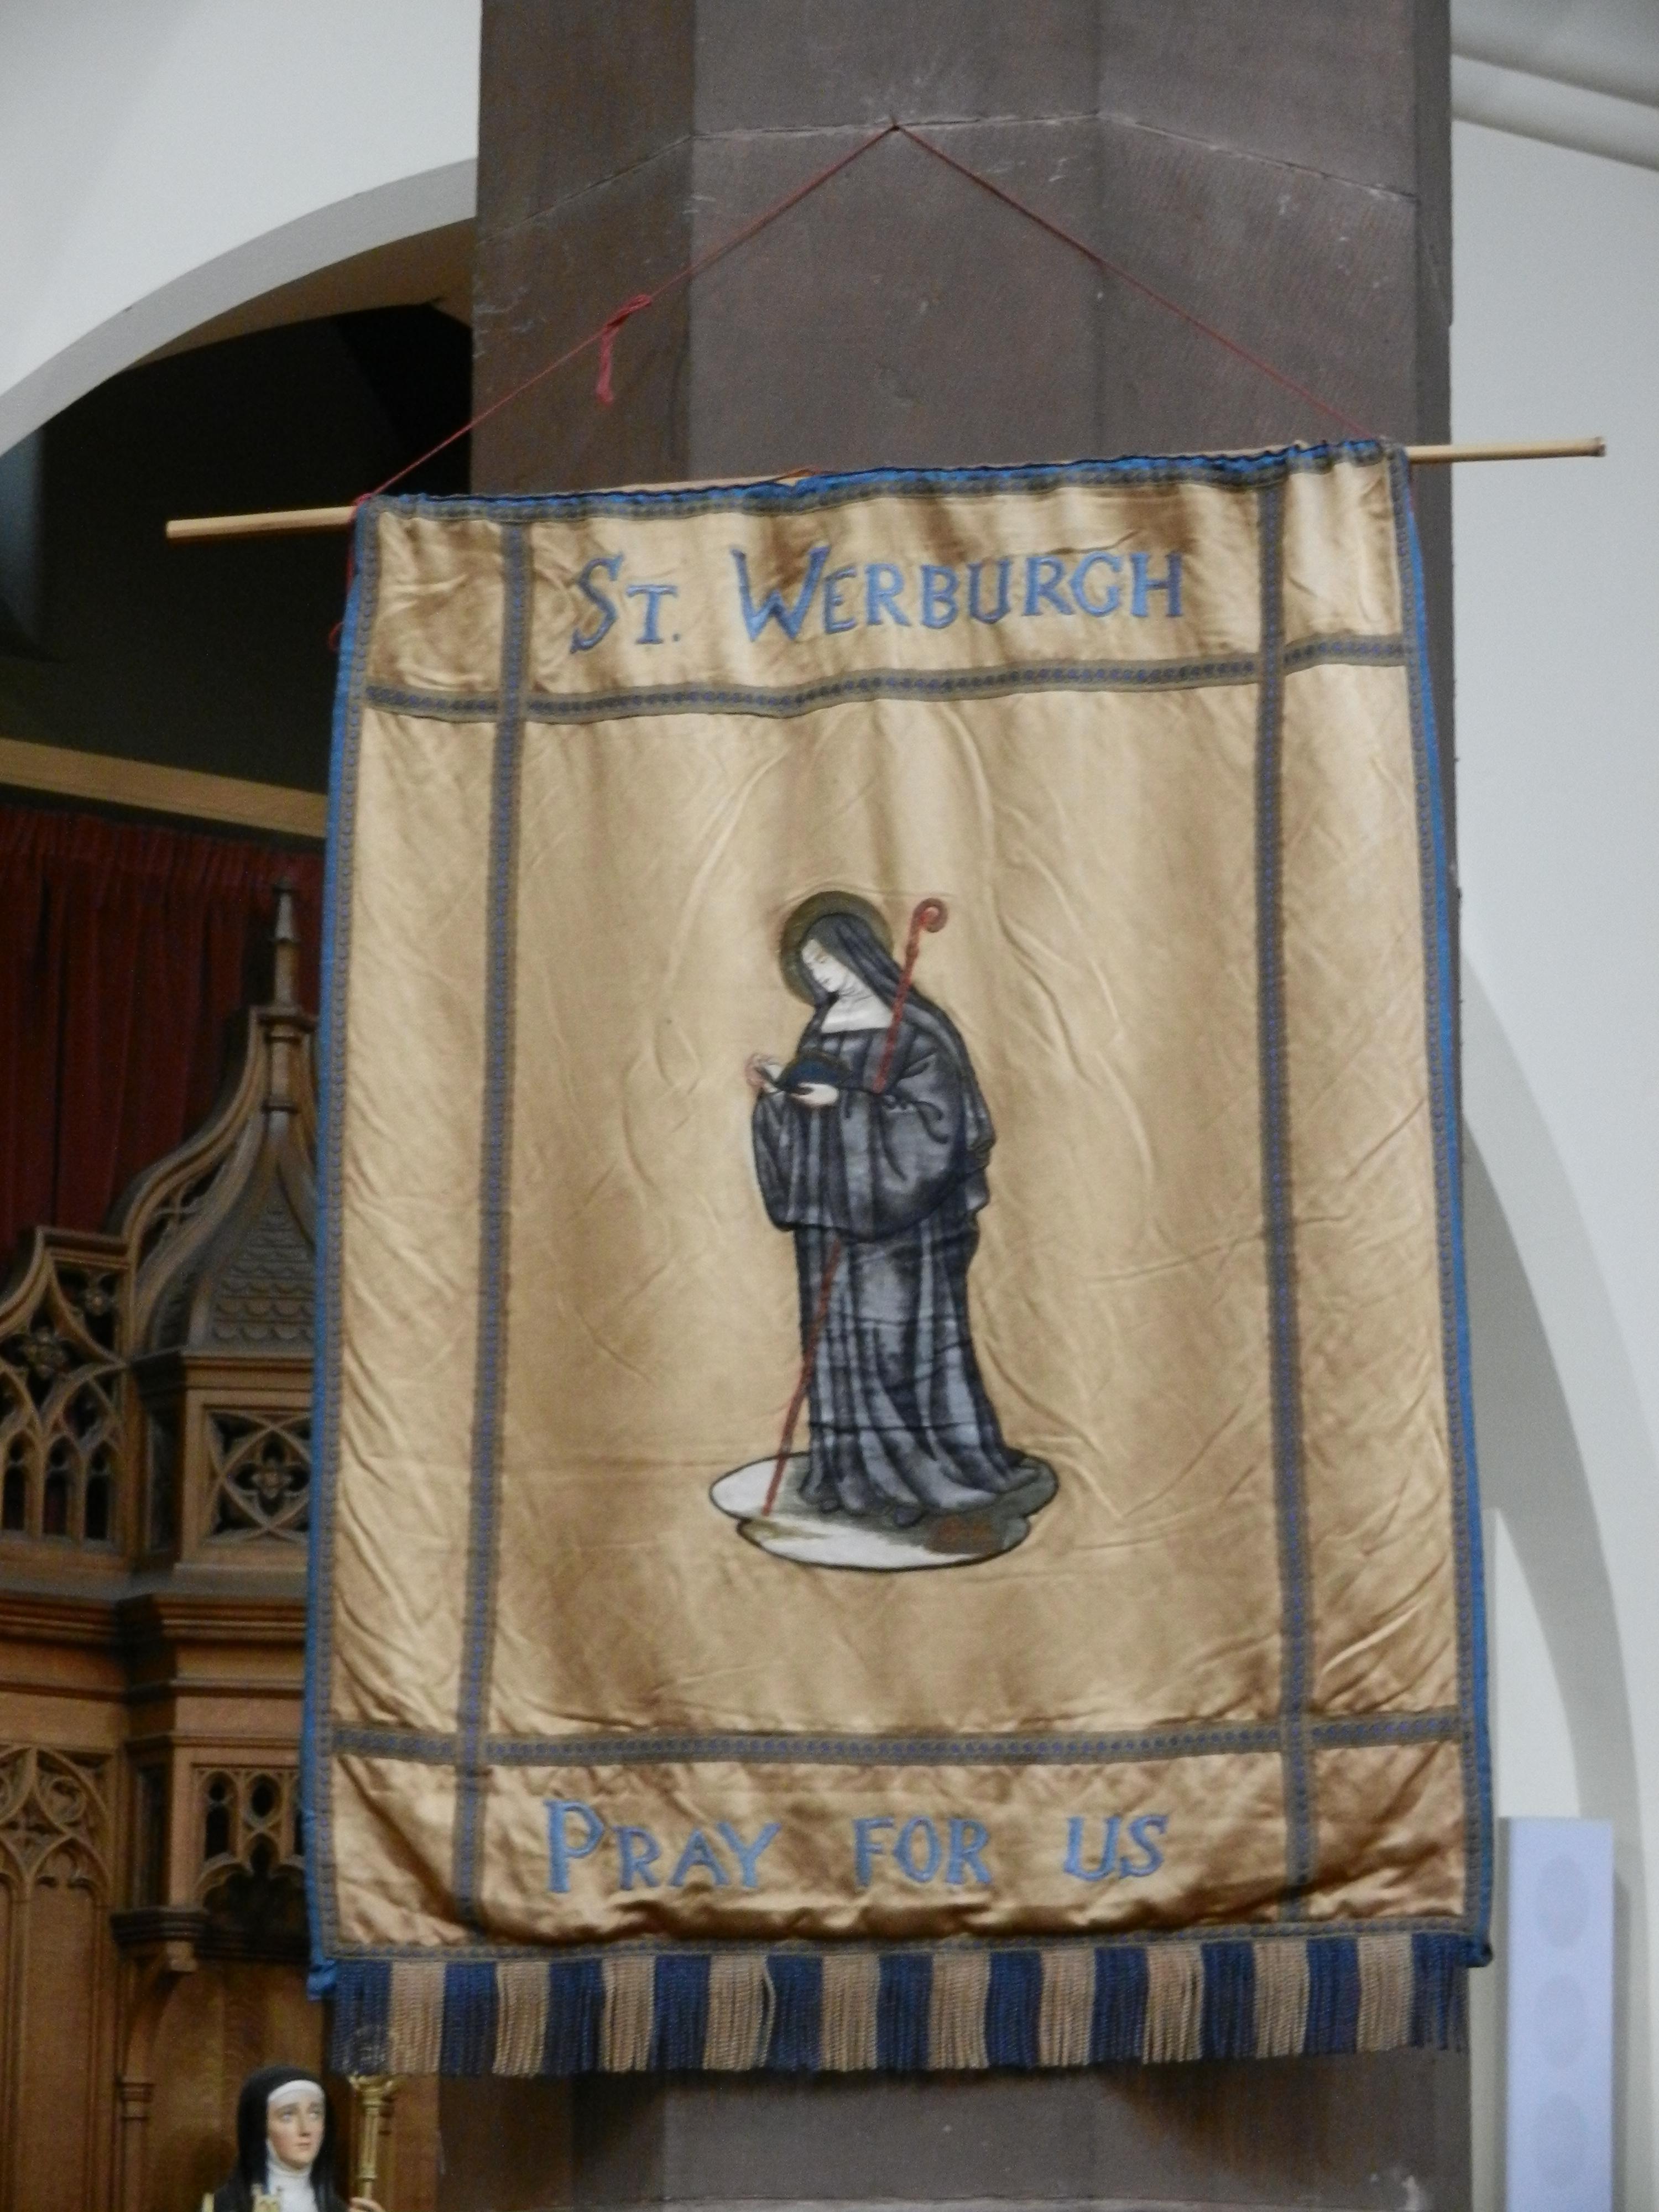 St Werburgh banner